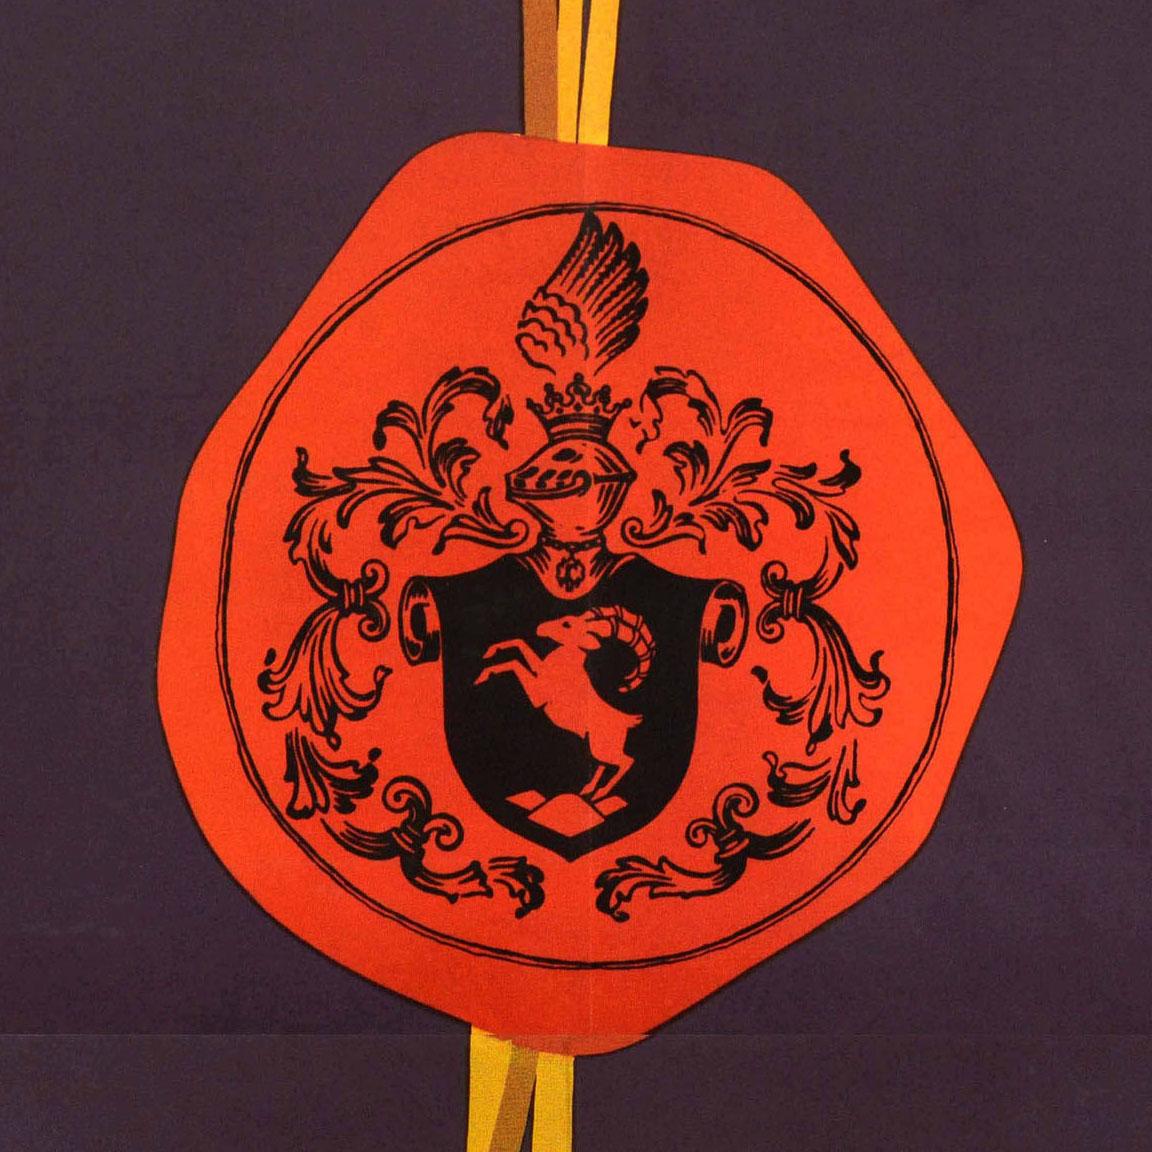 Original-Getränke-Werbeplakat für Meinl Weinbrand mit der Illustration eines Cognacglases vor einer Rosenblüte mit einem an goldenen Quasten herabhängenden Wachs-Siegel-Wappen, darüber der fette Titeltext in Blau und Weiß. Julius Meinl wurde 1862